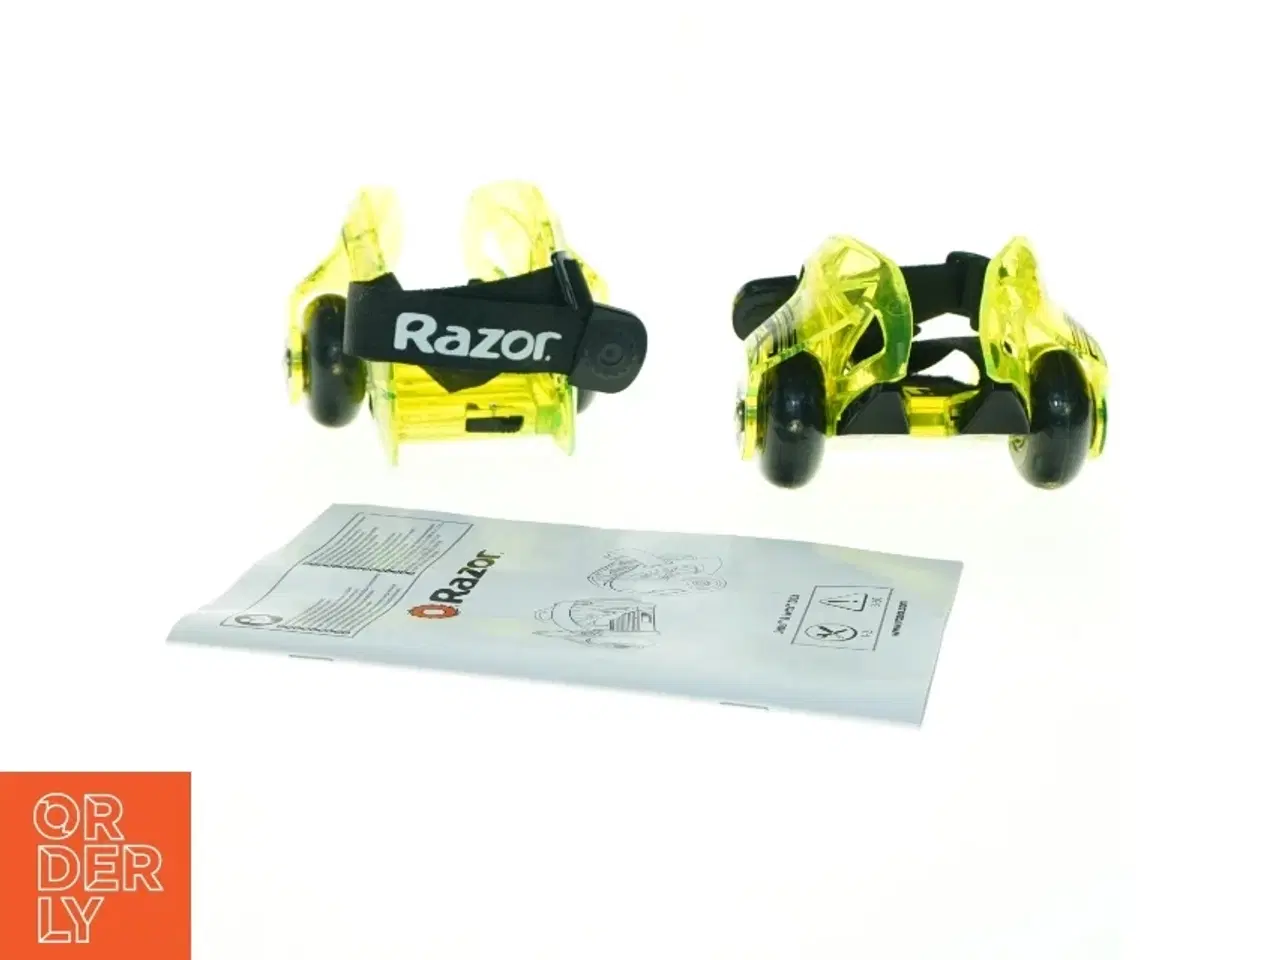 Billede 1 - Razor Jetts hæl-rulleskøjter fra Razor (str. Max 80 kilo)